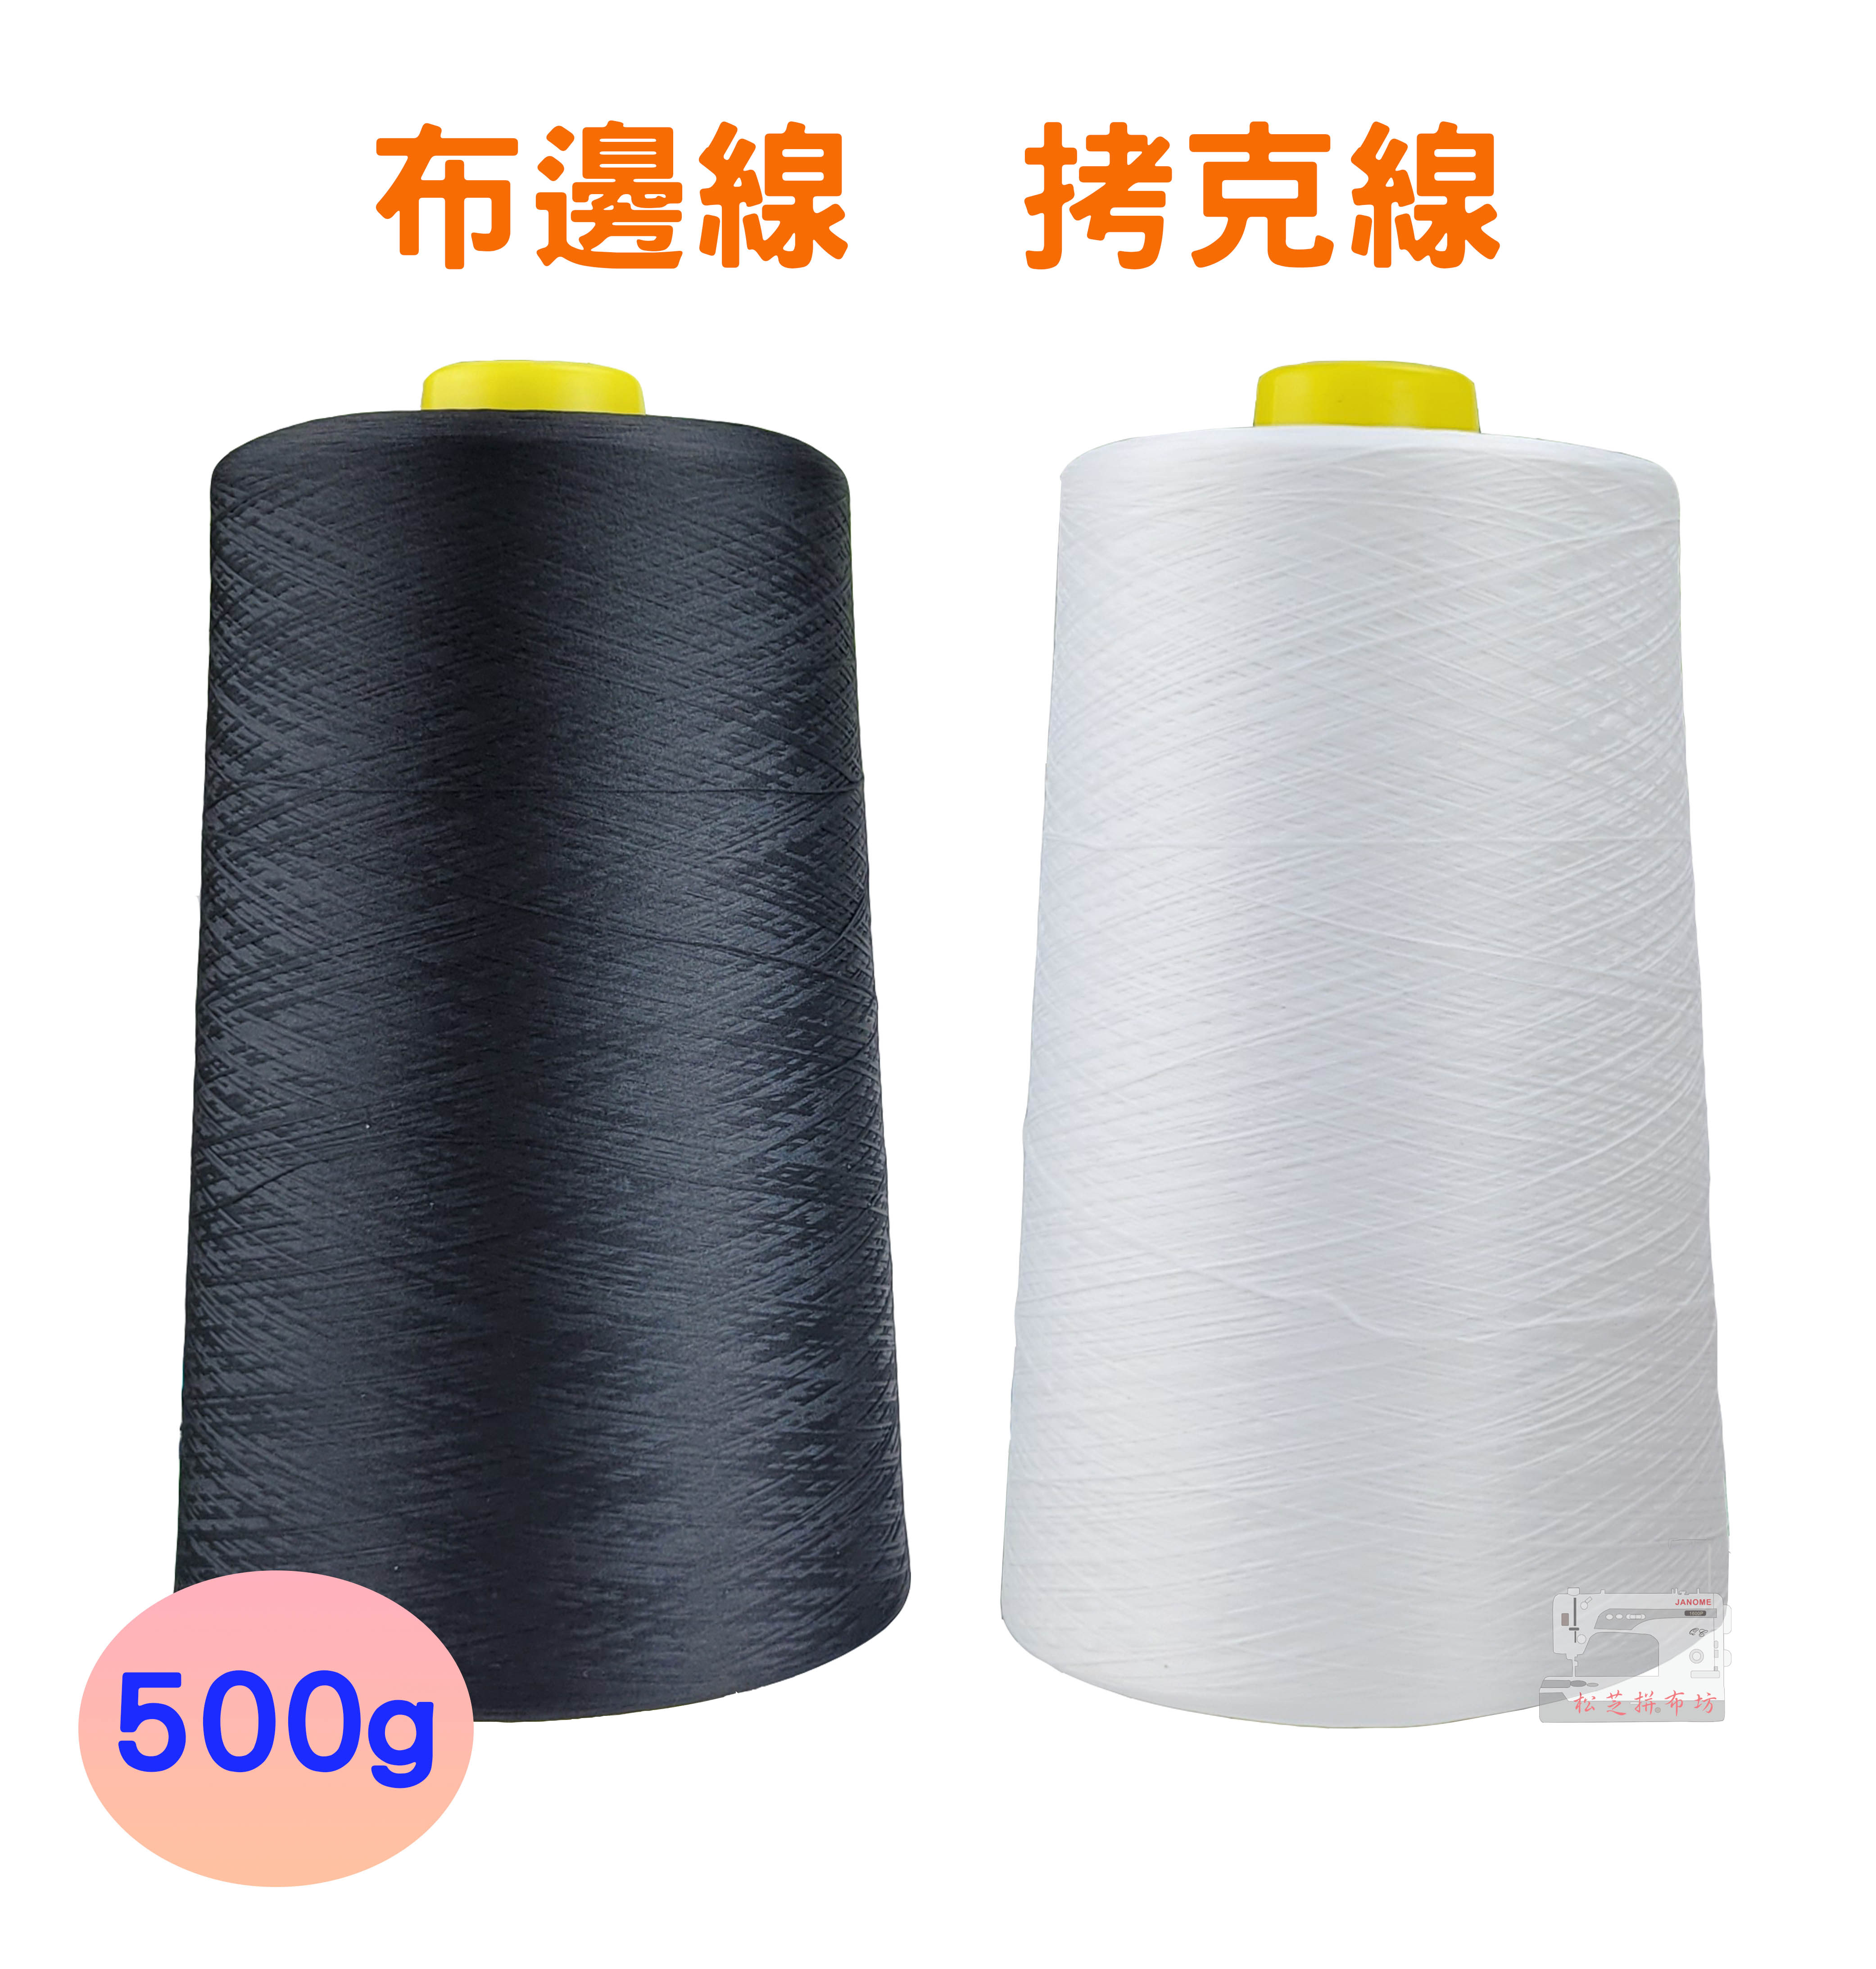 【松芝拼布坊】台灣製 布邊線 拷克線 500g 黑、白 兩色